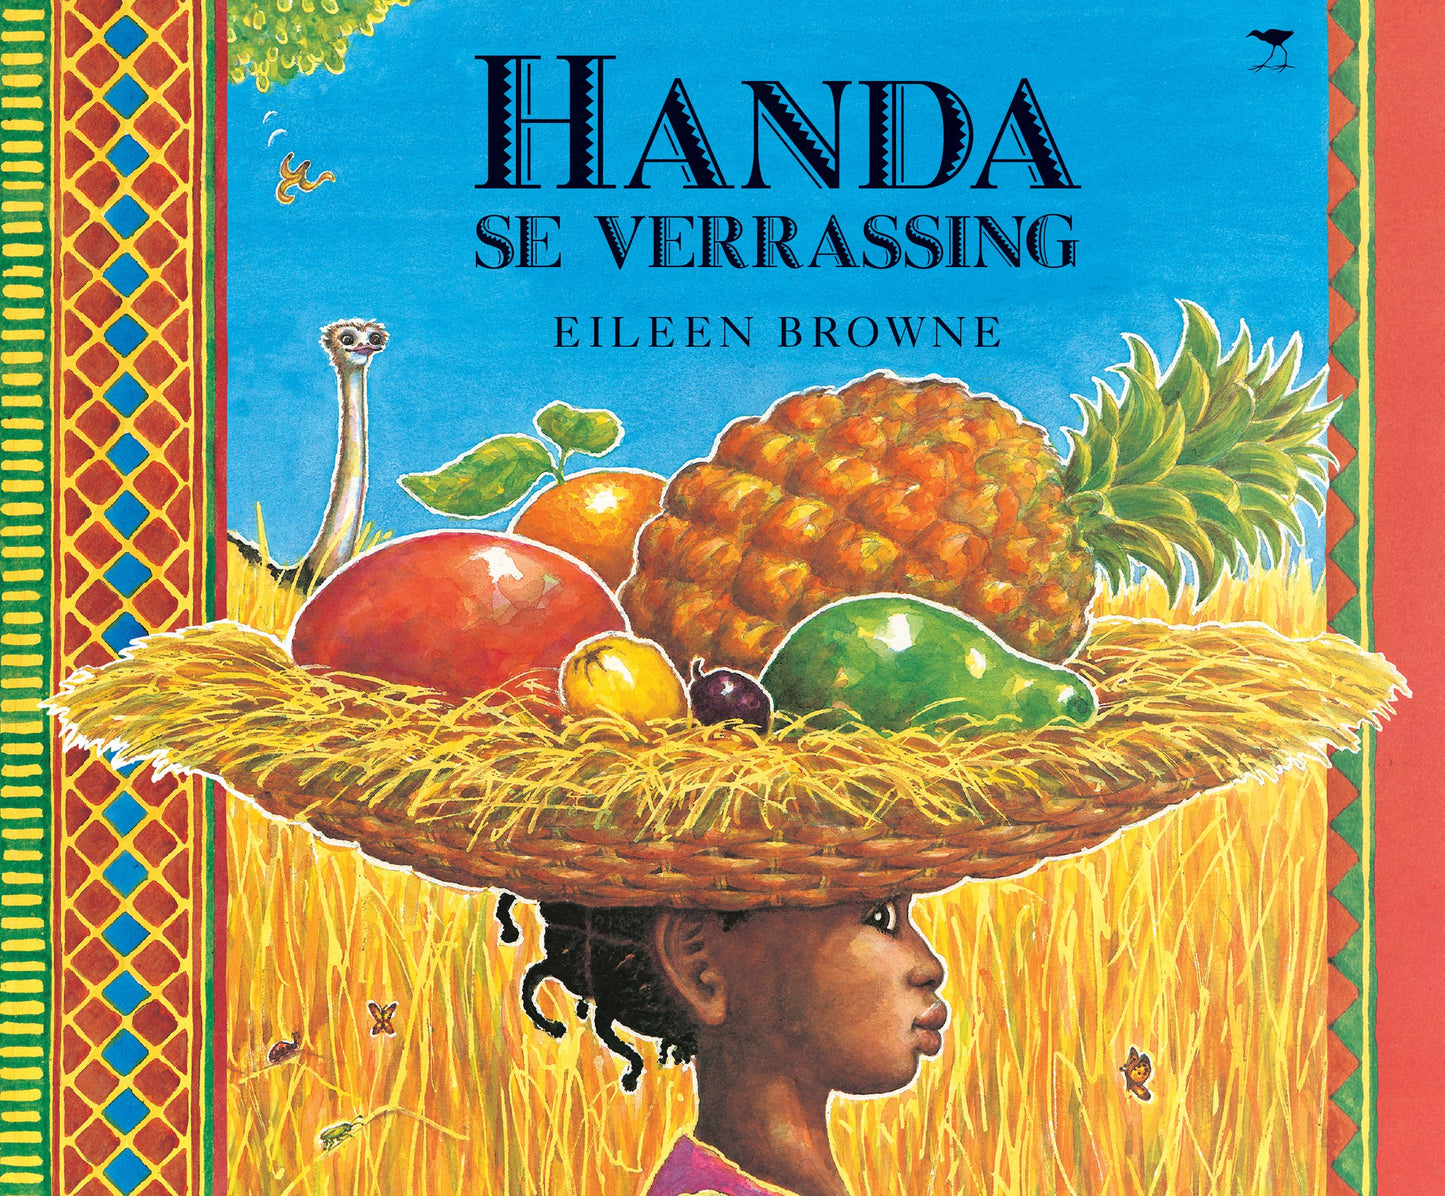 Handa se verrassing, by Eileen Browne (Afrikaans)